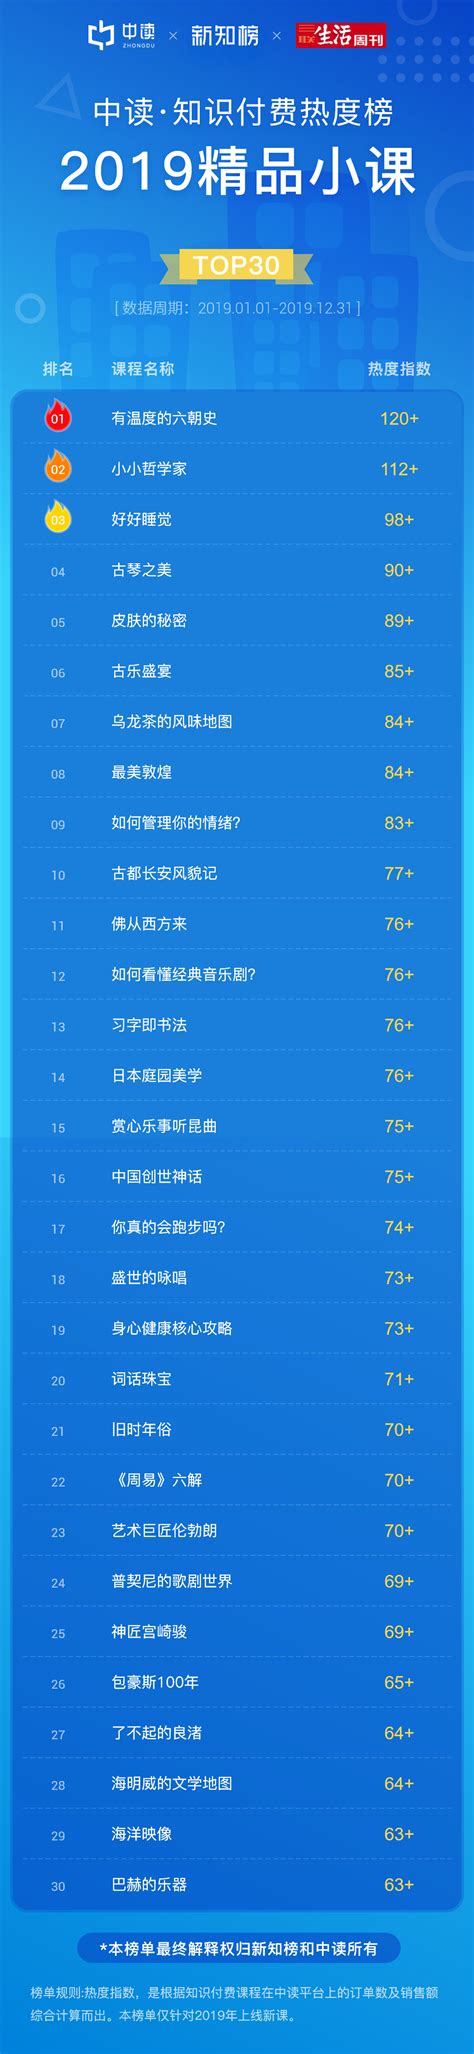 2019年度知识付费平台排行榜Top50-搜狐大视野-搜狐新闻